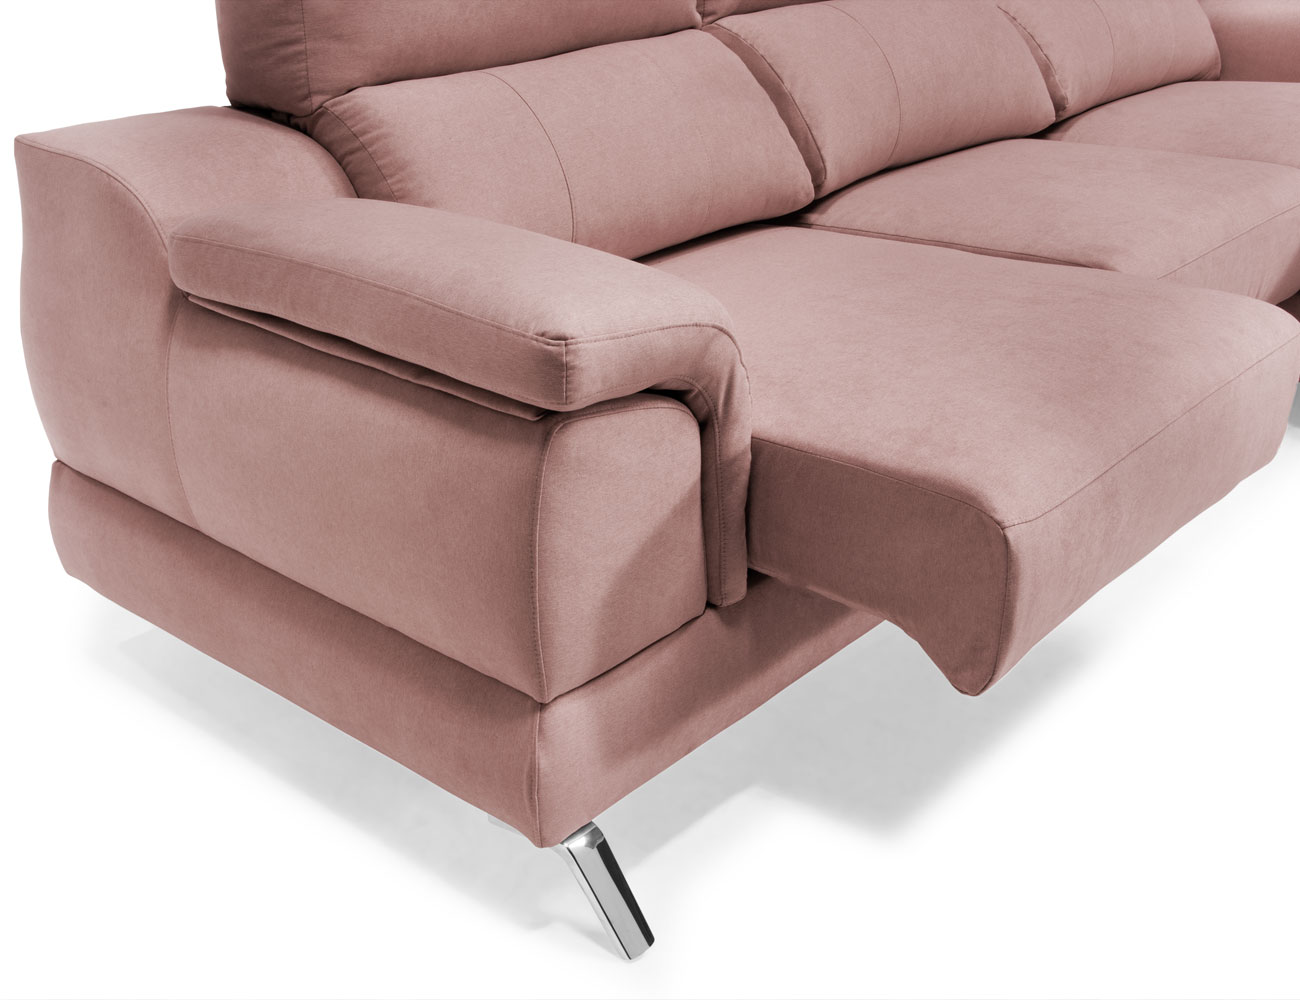 Sofa chaiselongue baku detalle